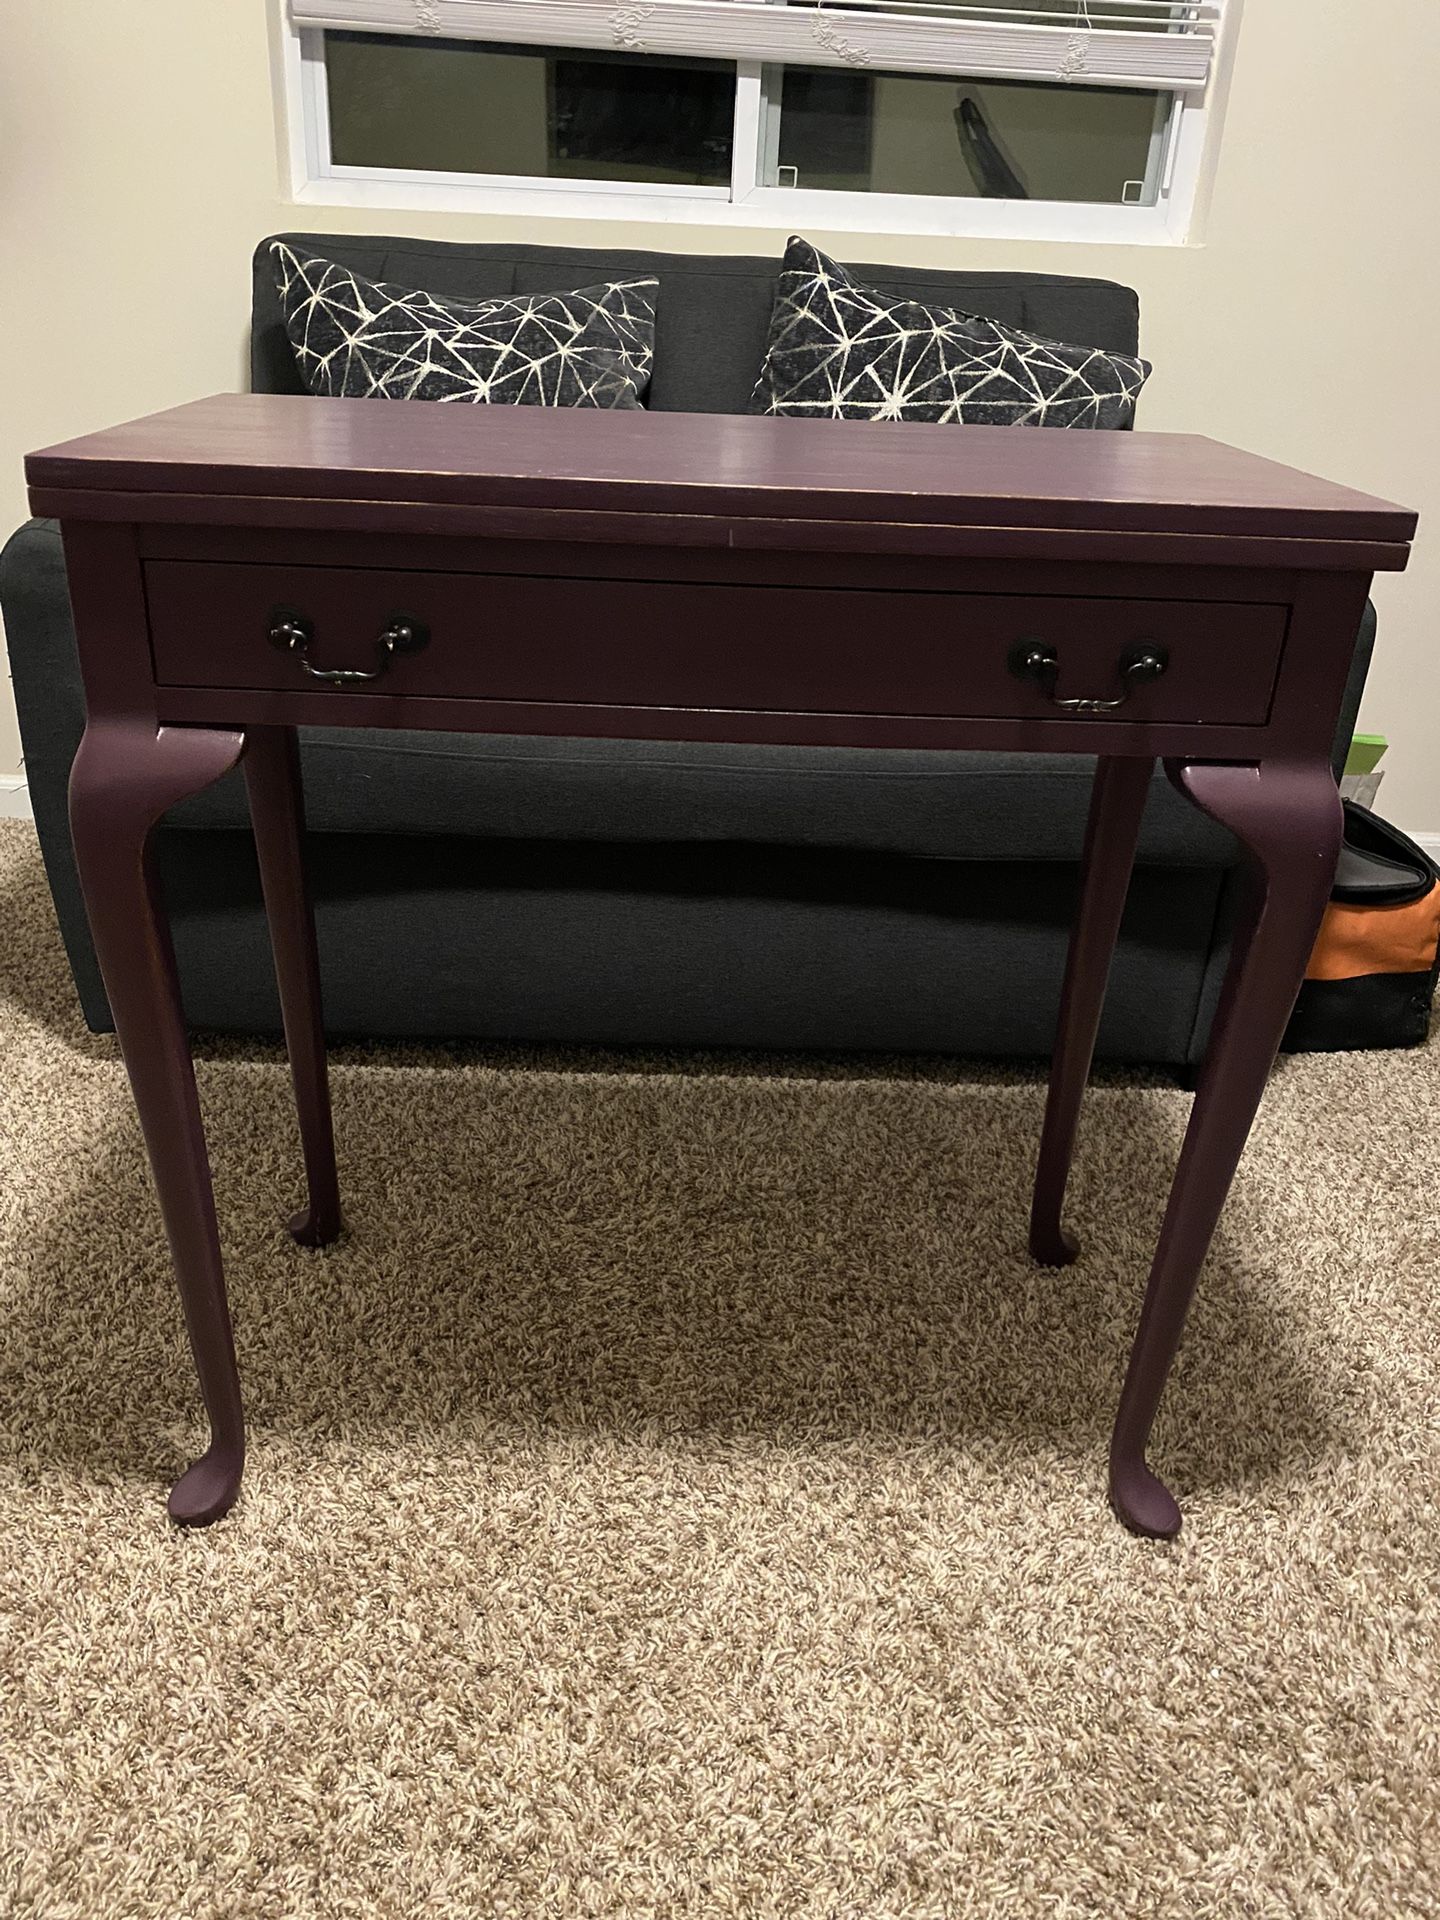 Antique expandable purple desk table